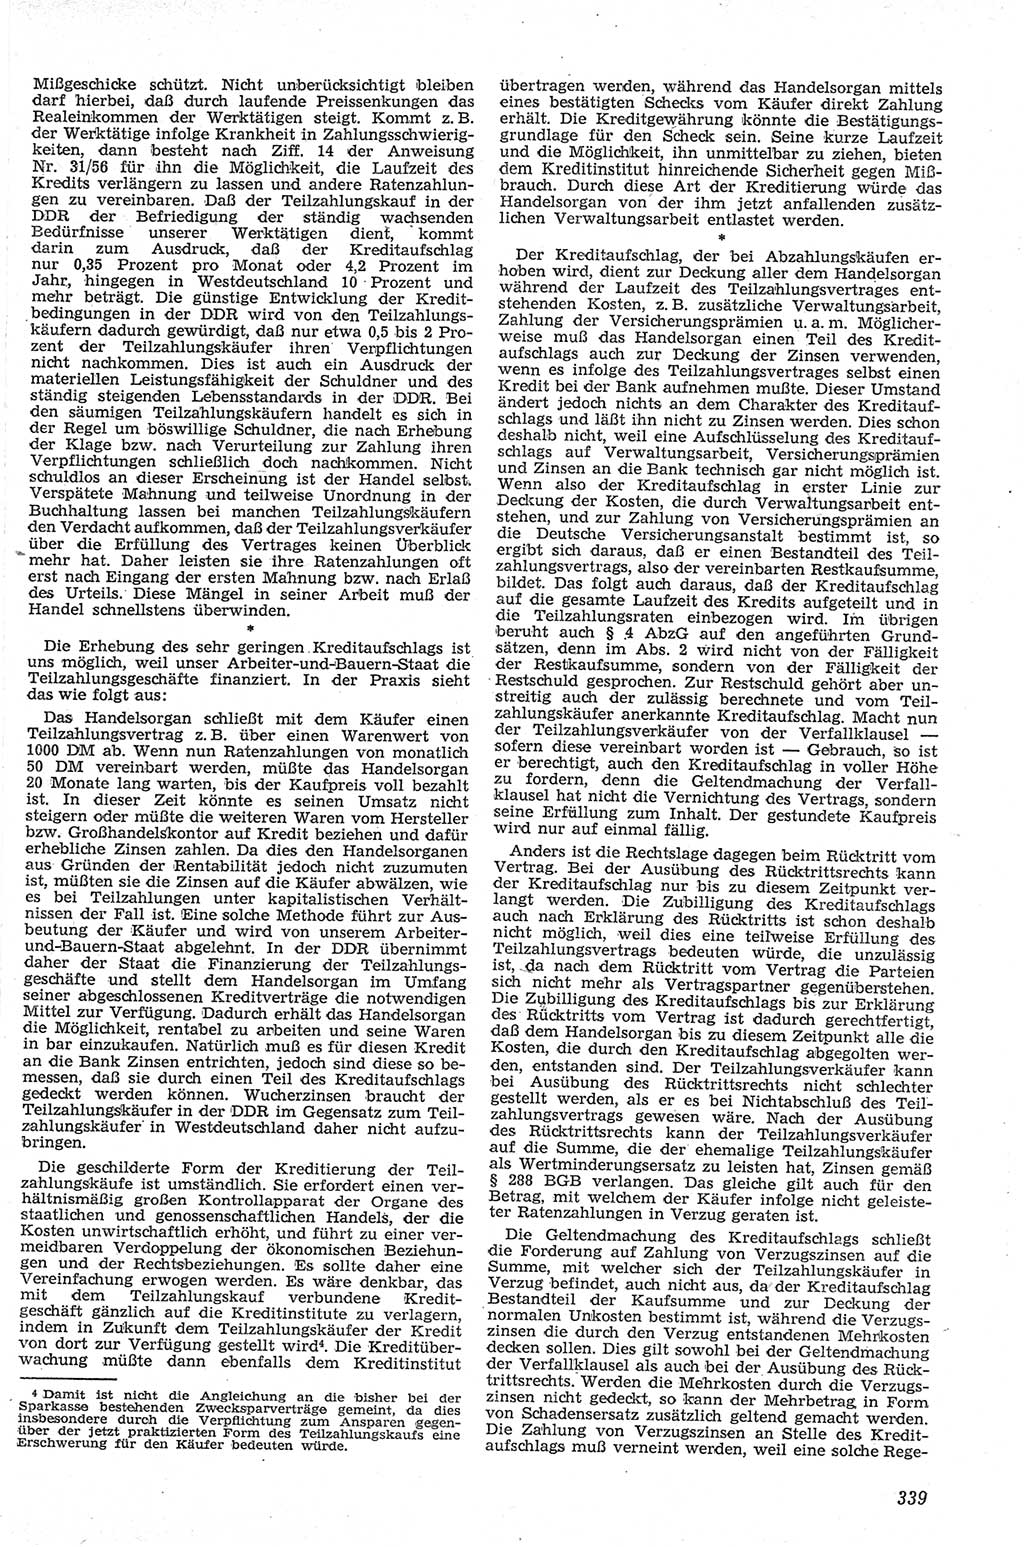 Neue Justiz (NJ), Zeitschrift für Recht und Rechtswissenschaft [Deutsche Demokratische Republik (DDR)], 13. Jahrgang 1959, Seite 339 (NJ DDR 1959, S. 339)